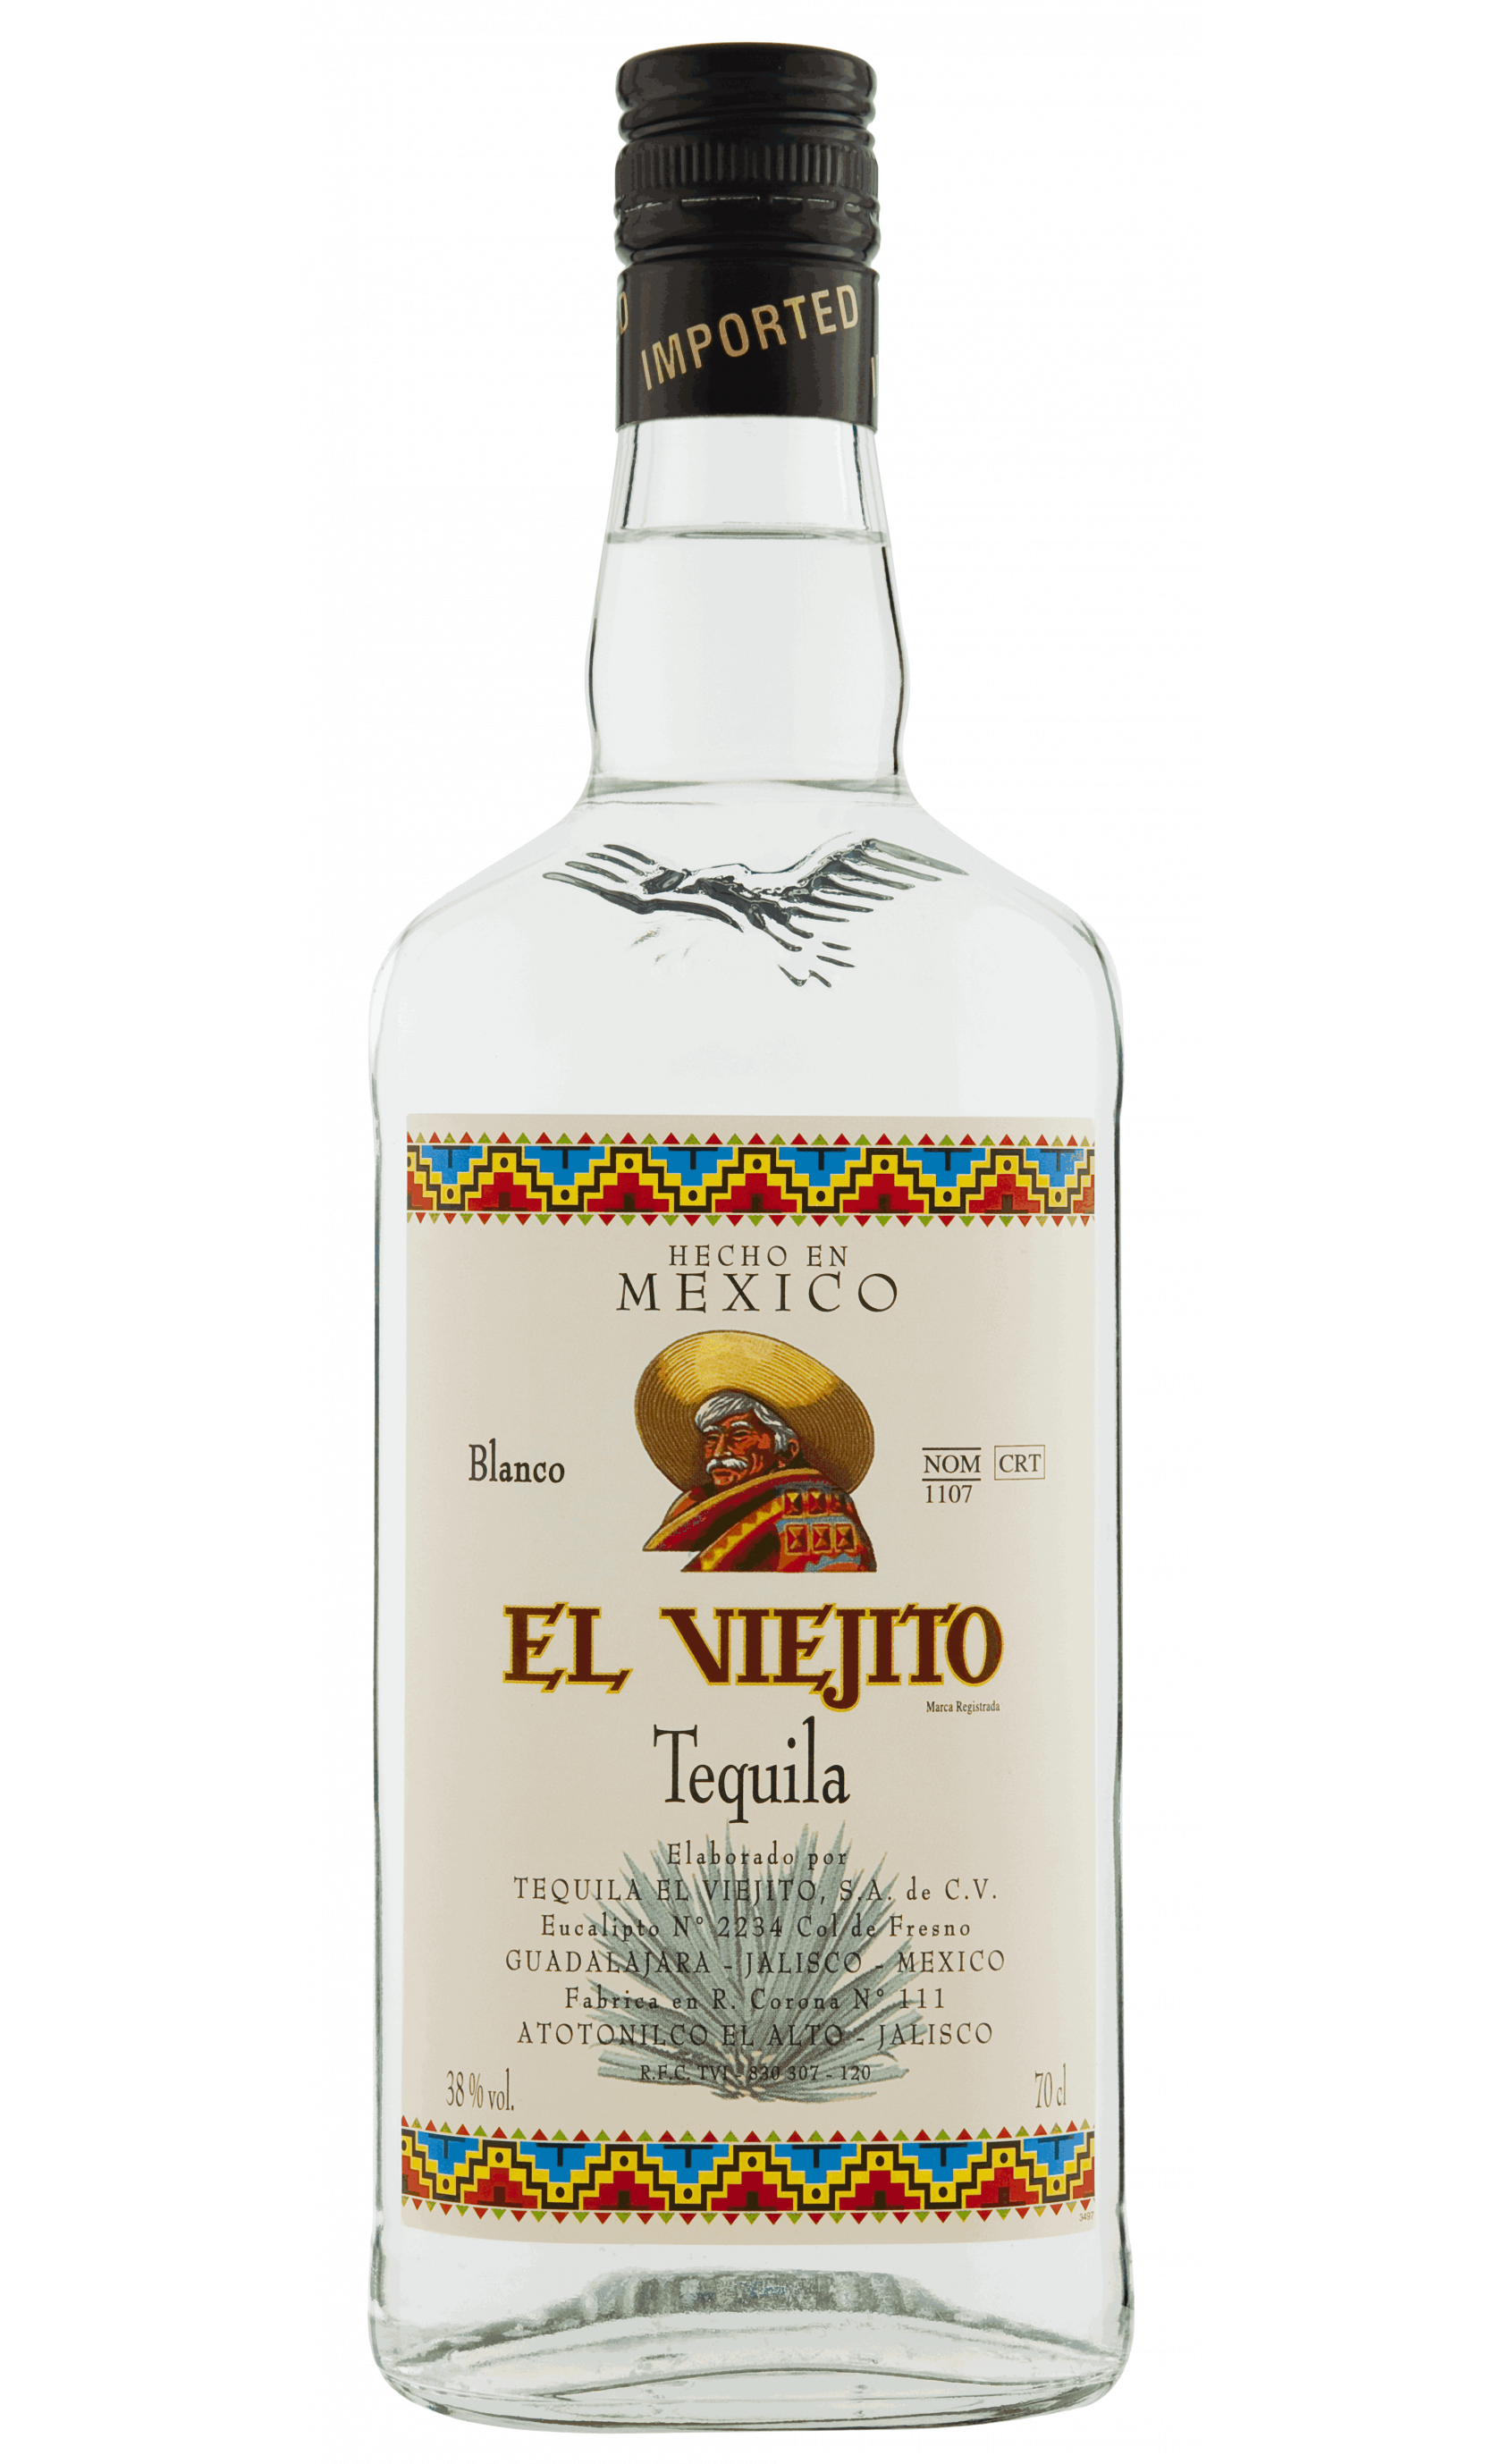 Tequila El Viejito